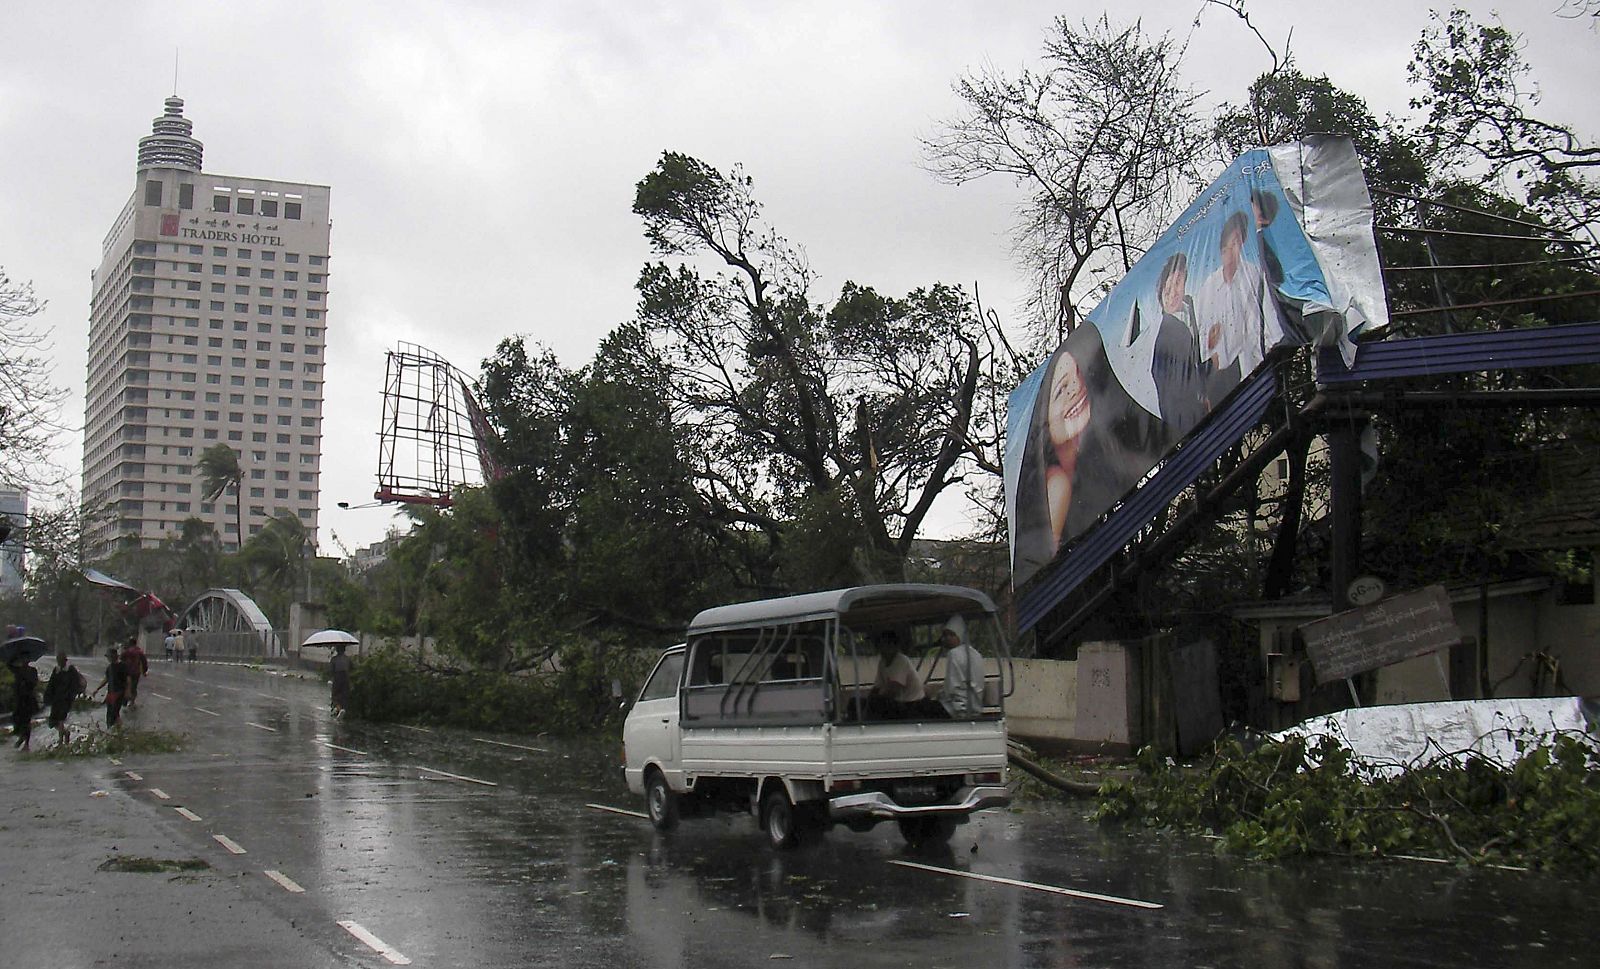 El ciclón 'Nargis' ha provocado numerosos destrozos como vallas y árboles caídos en el centro de Rangún, la capital de Birmania. El Estado ha declarado el estado de emergencia en cinco regiones y el ciclón ya ha causado la muerte de al menos cuatro p